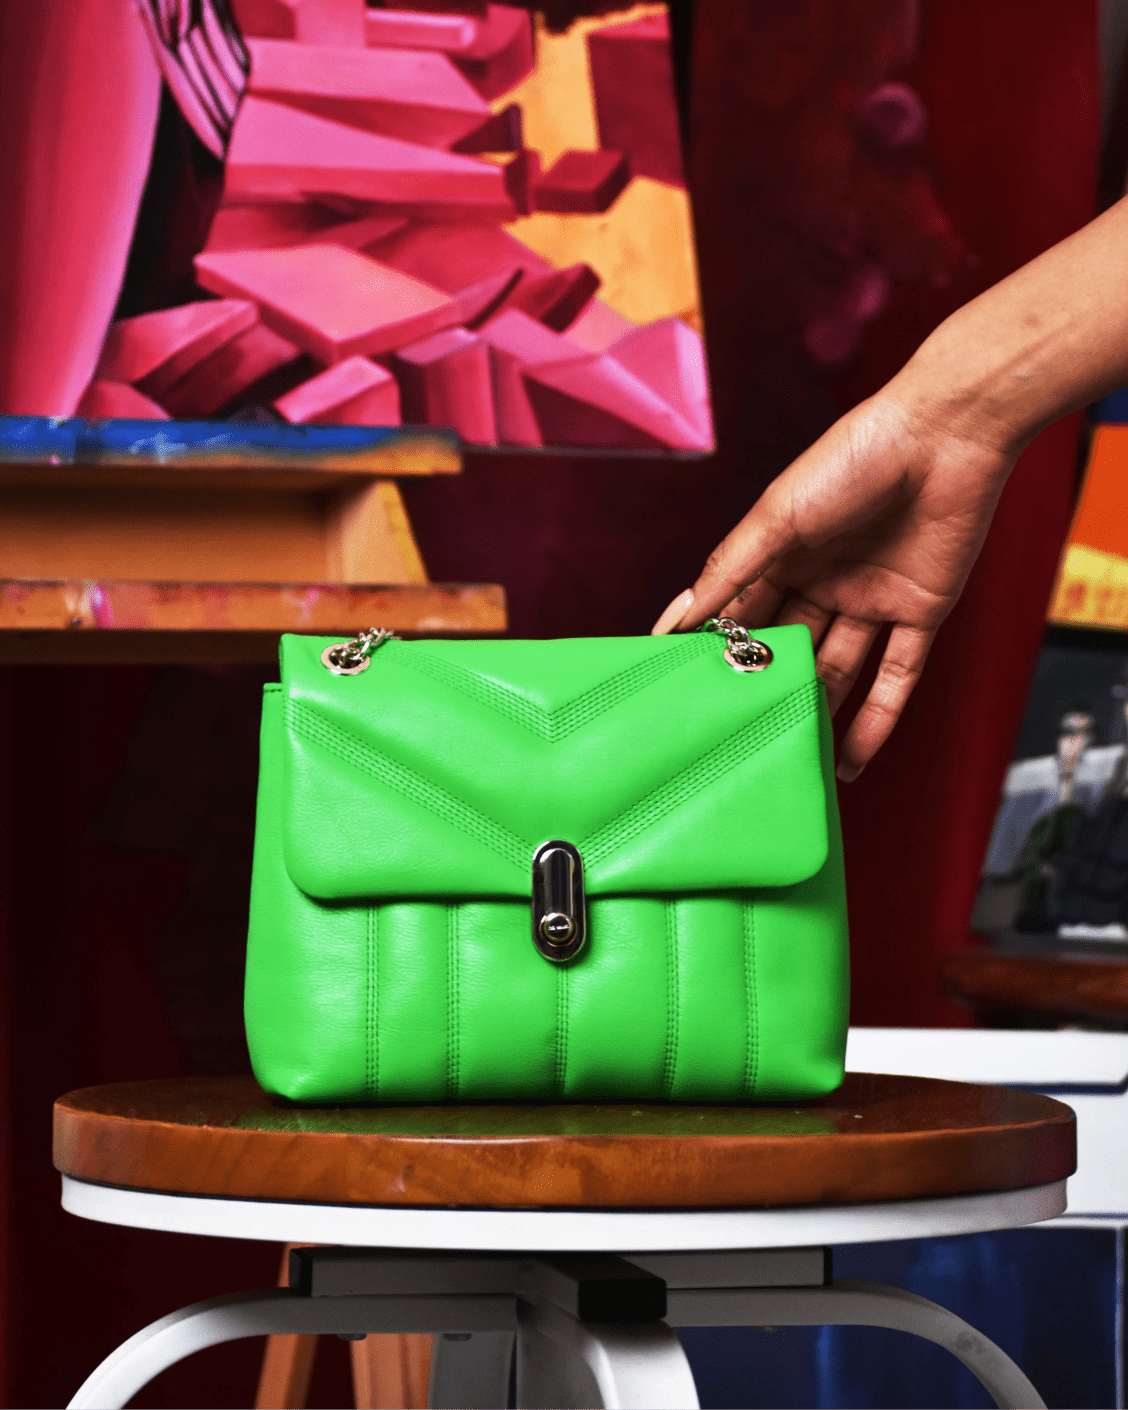 Green handbag